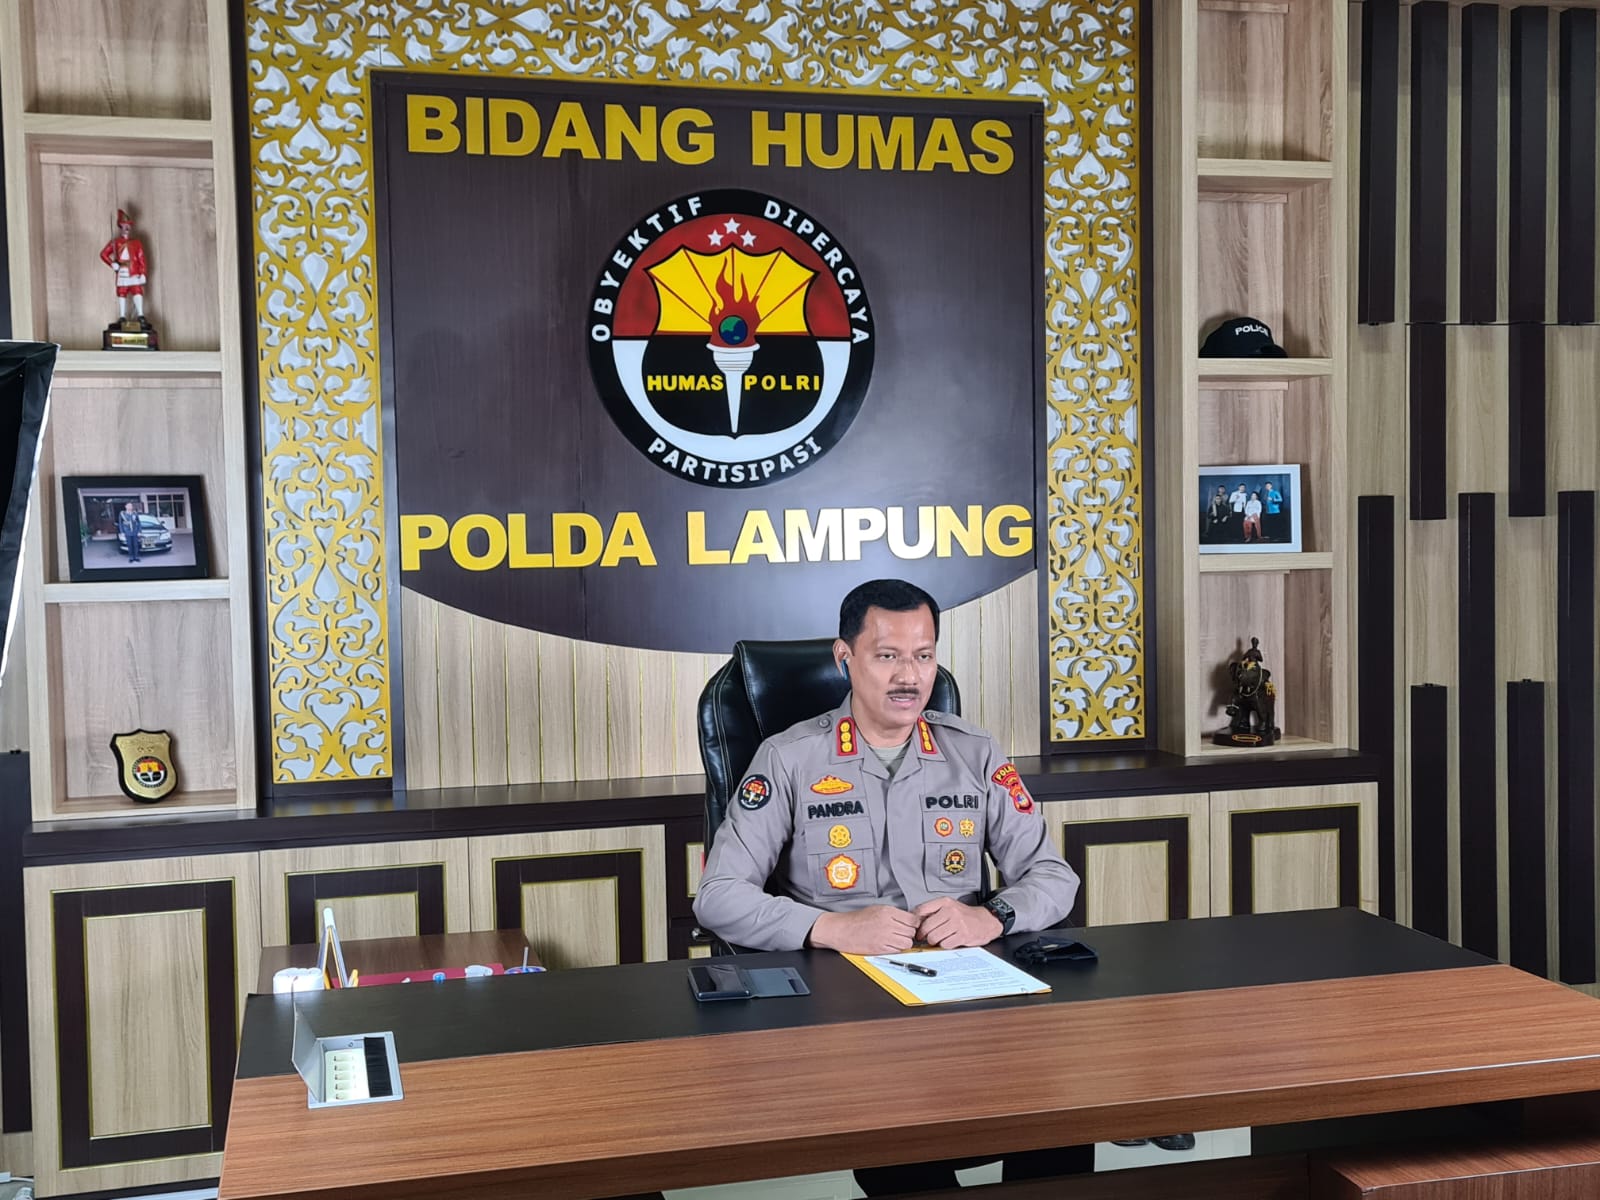 Polda Metro Jaya Amankan 5 Orang Anggota Khilafatul Muslimin di Lampung